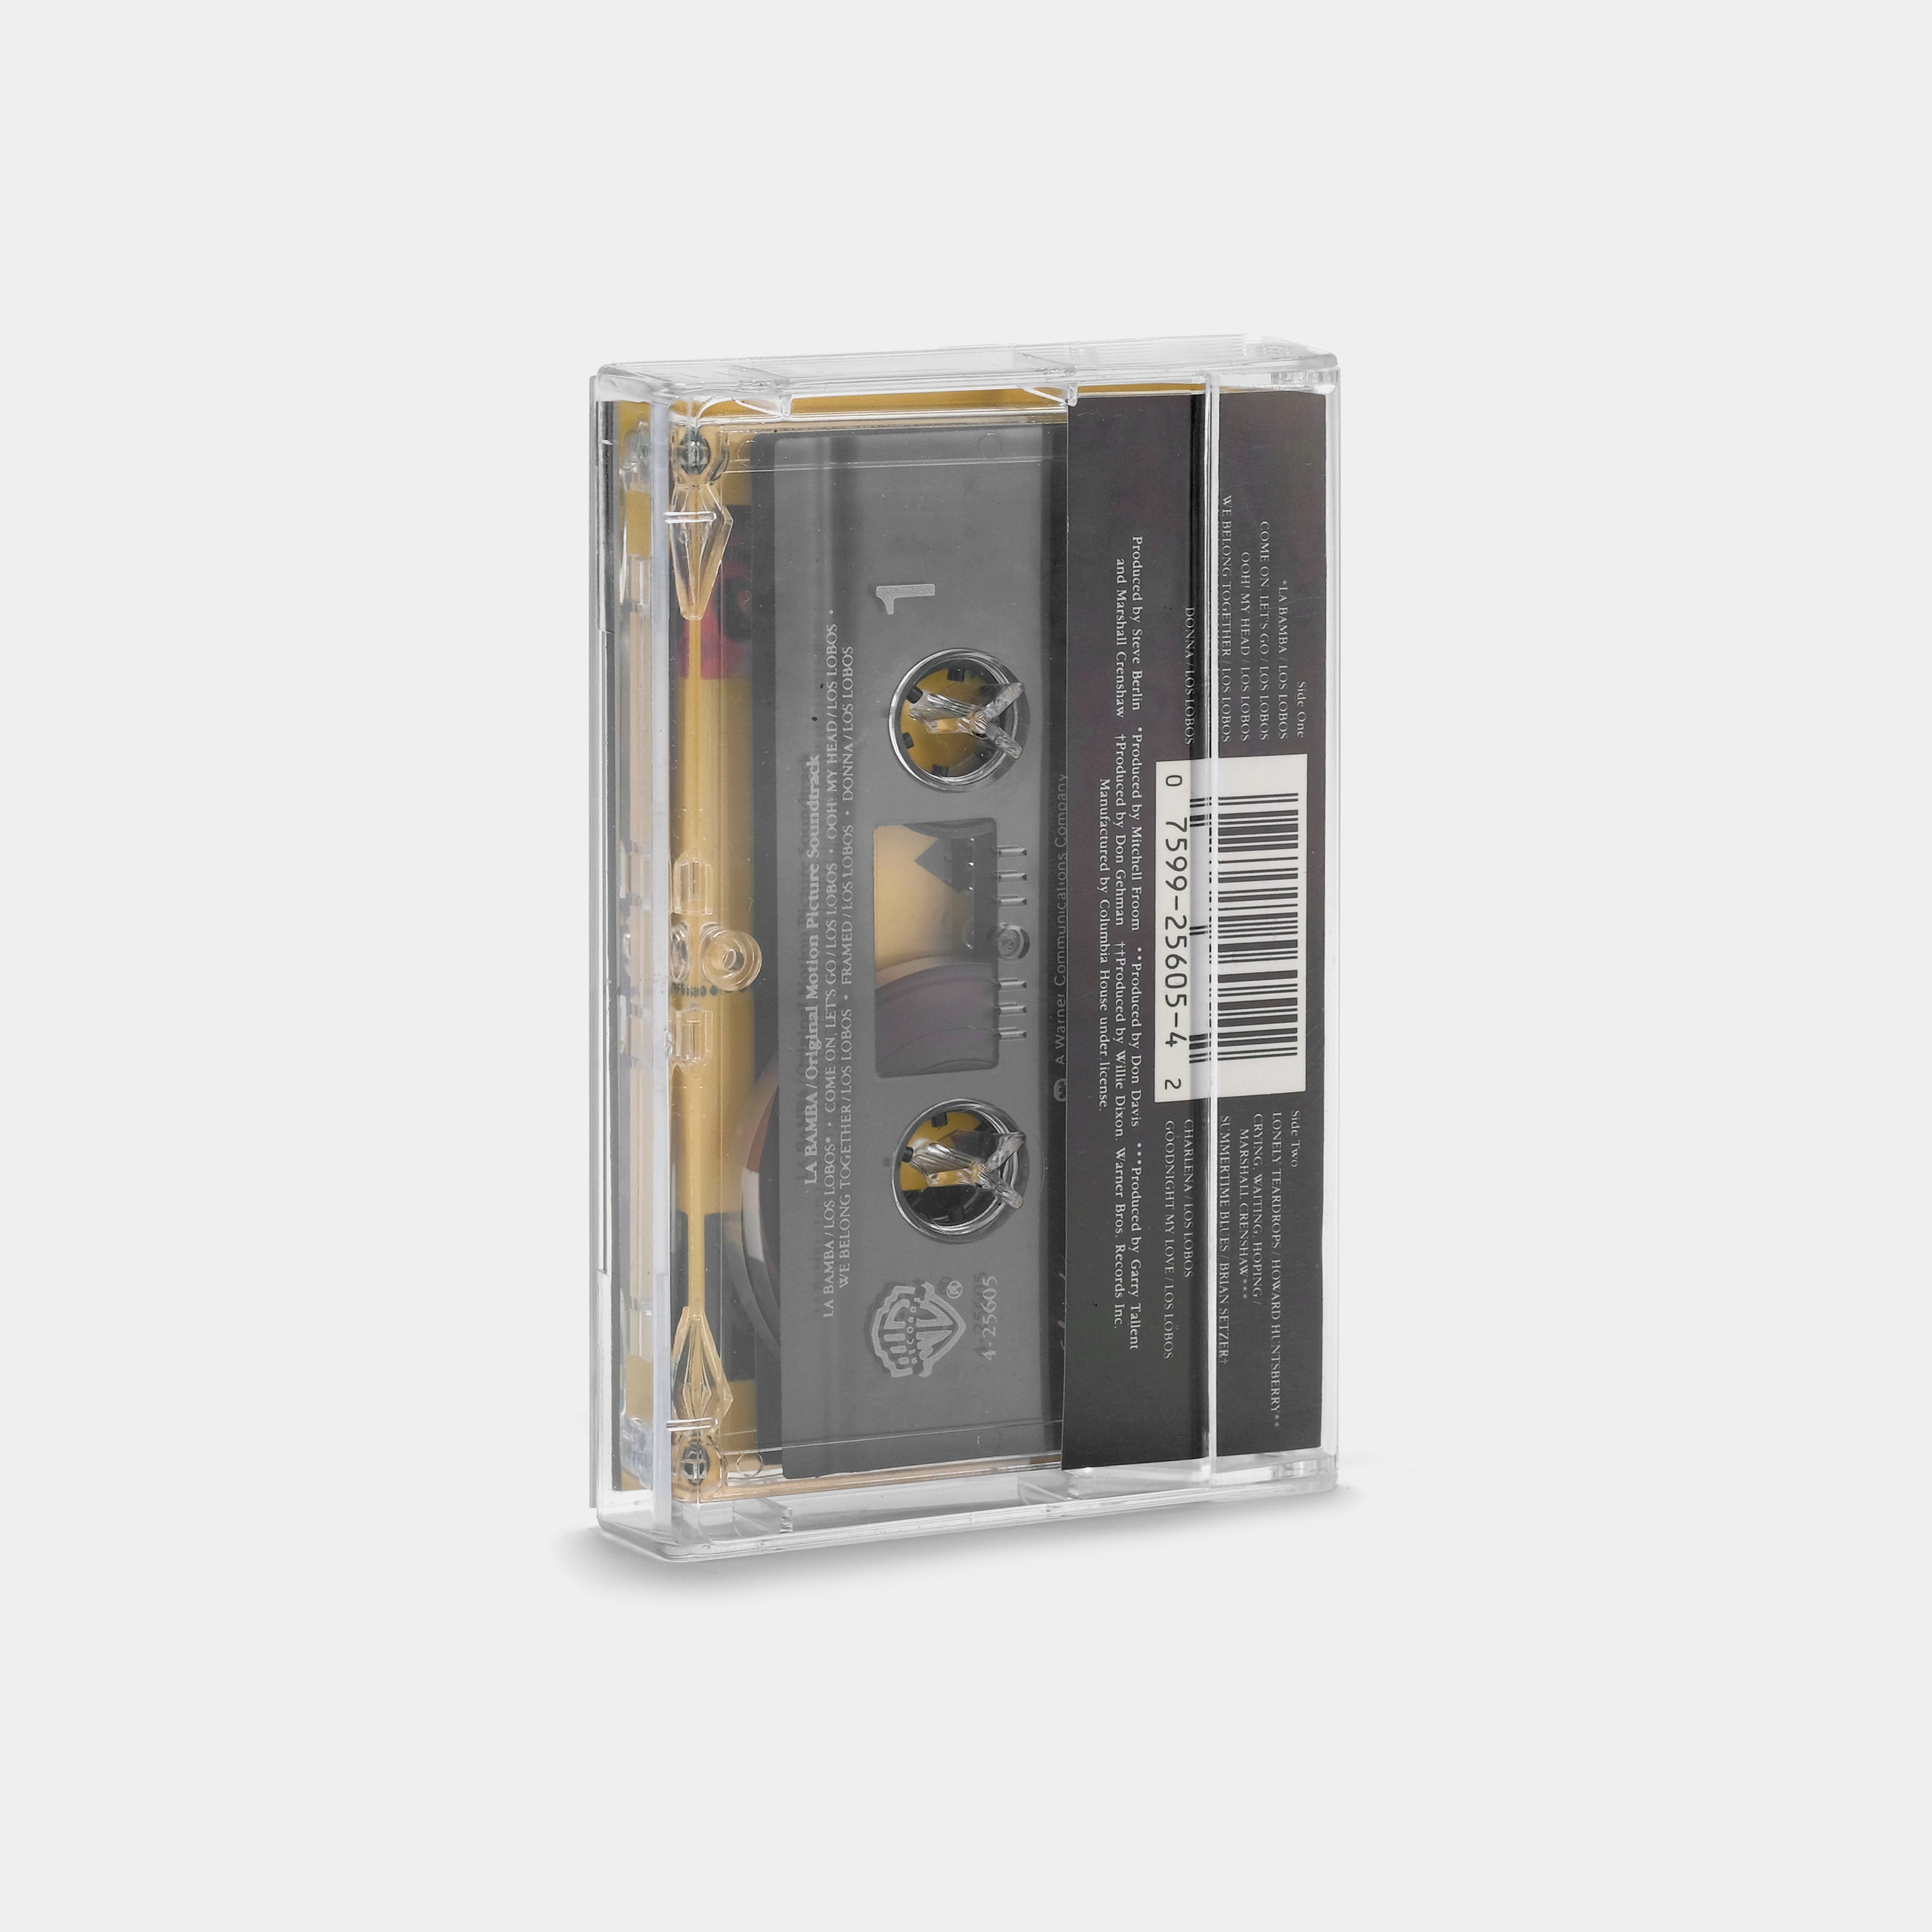 La Bamba (Original Motion Picture Soundtrack) Cassette Tape